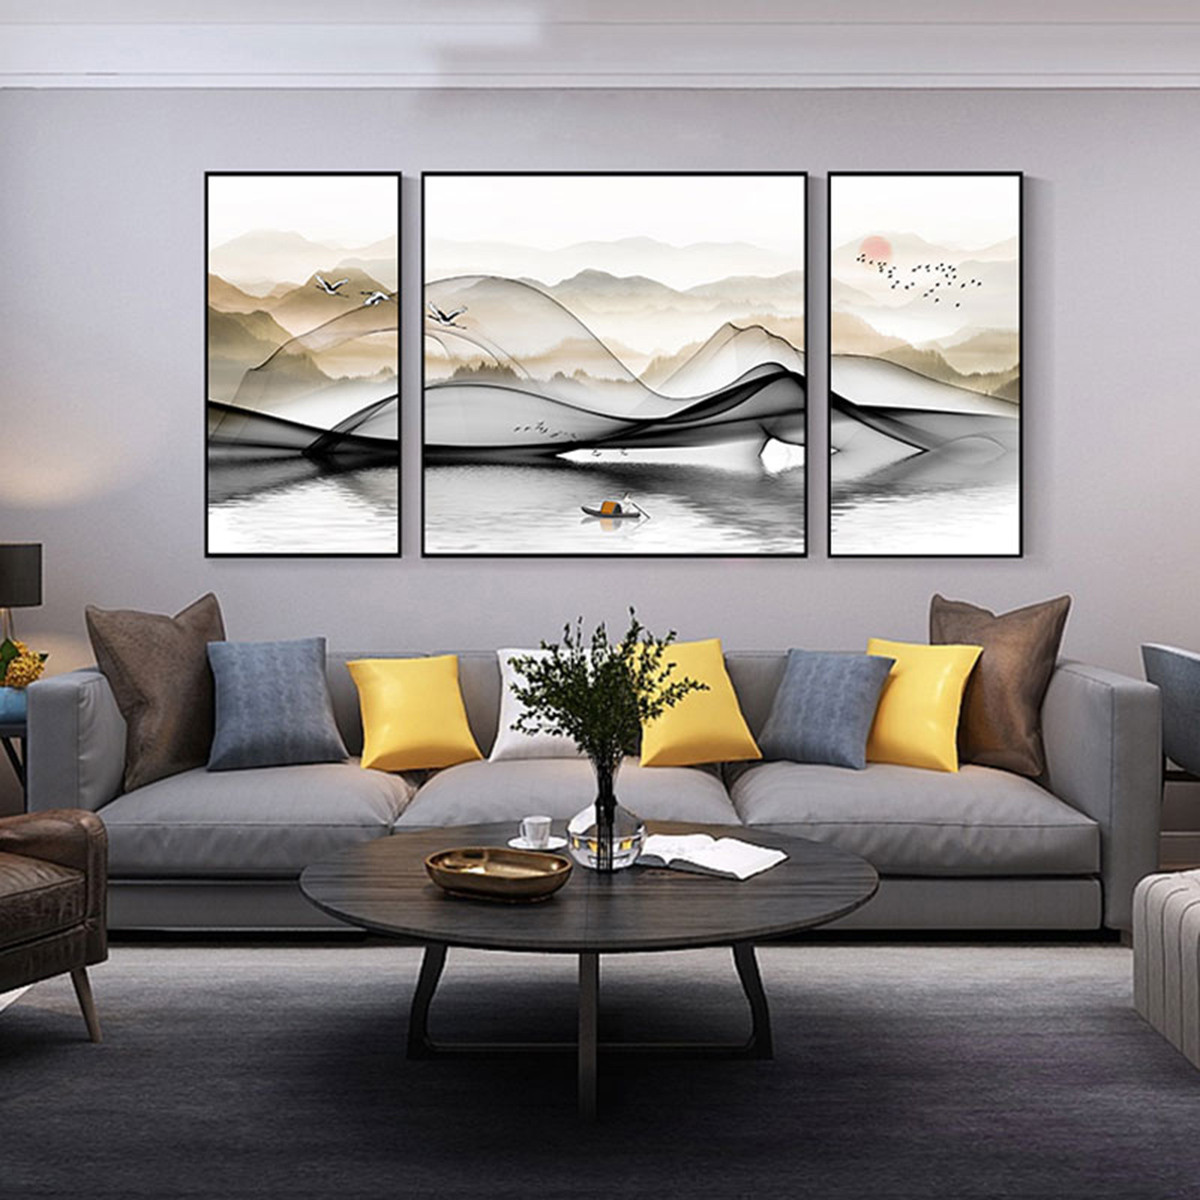 新中式客厅三联画禅意书房画中式沙发墙画意境画